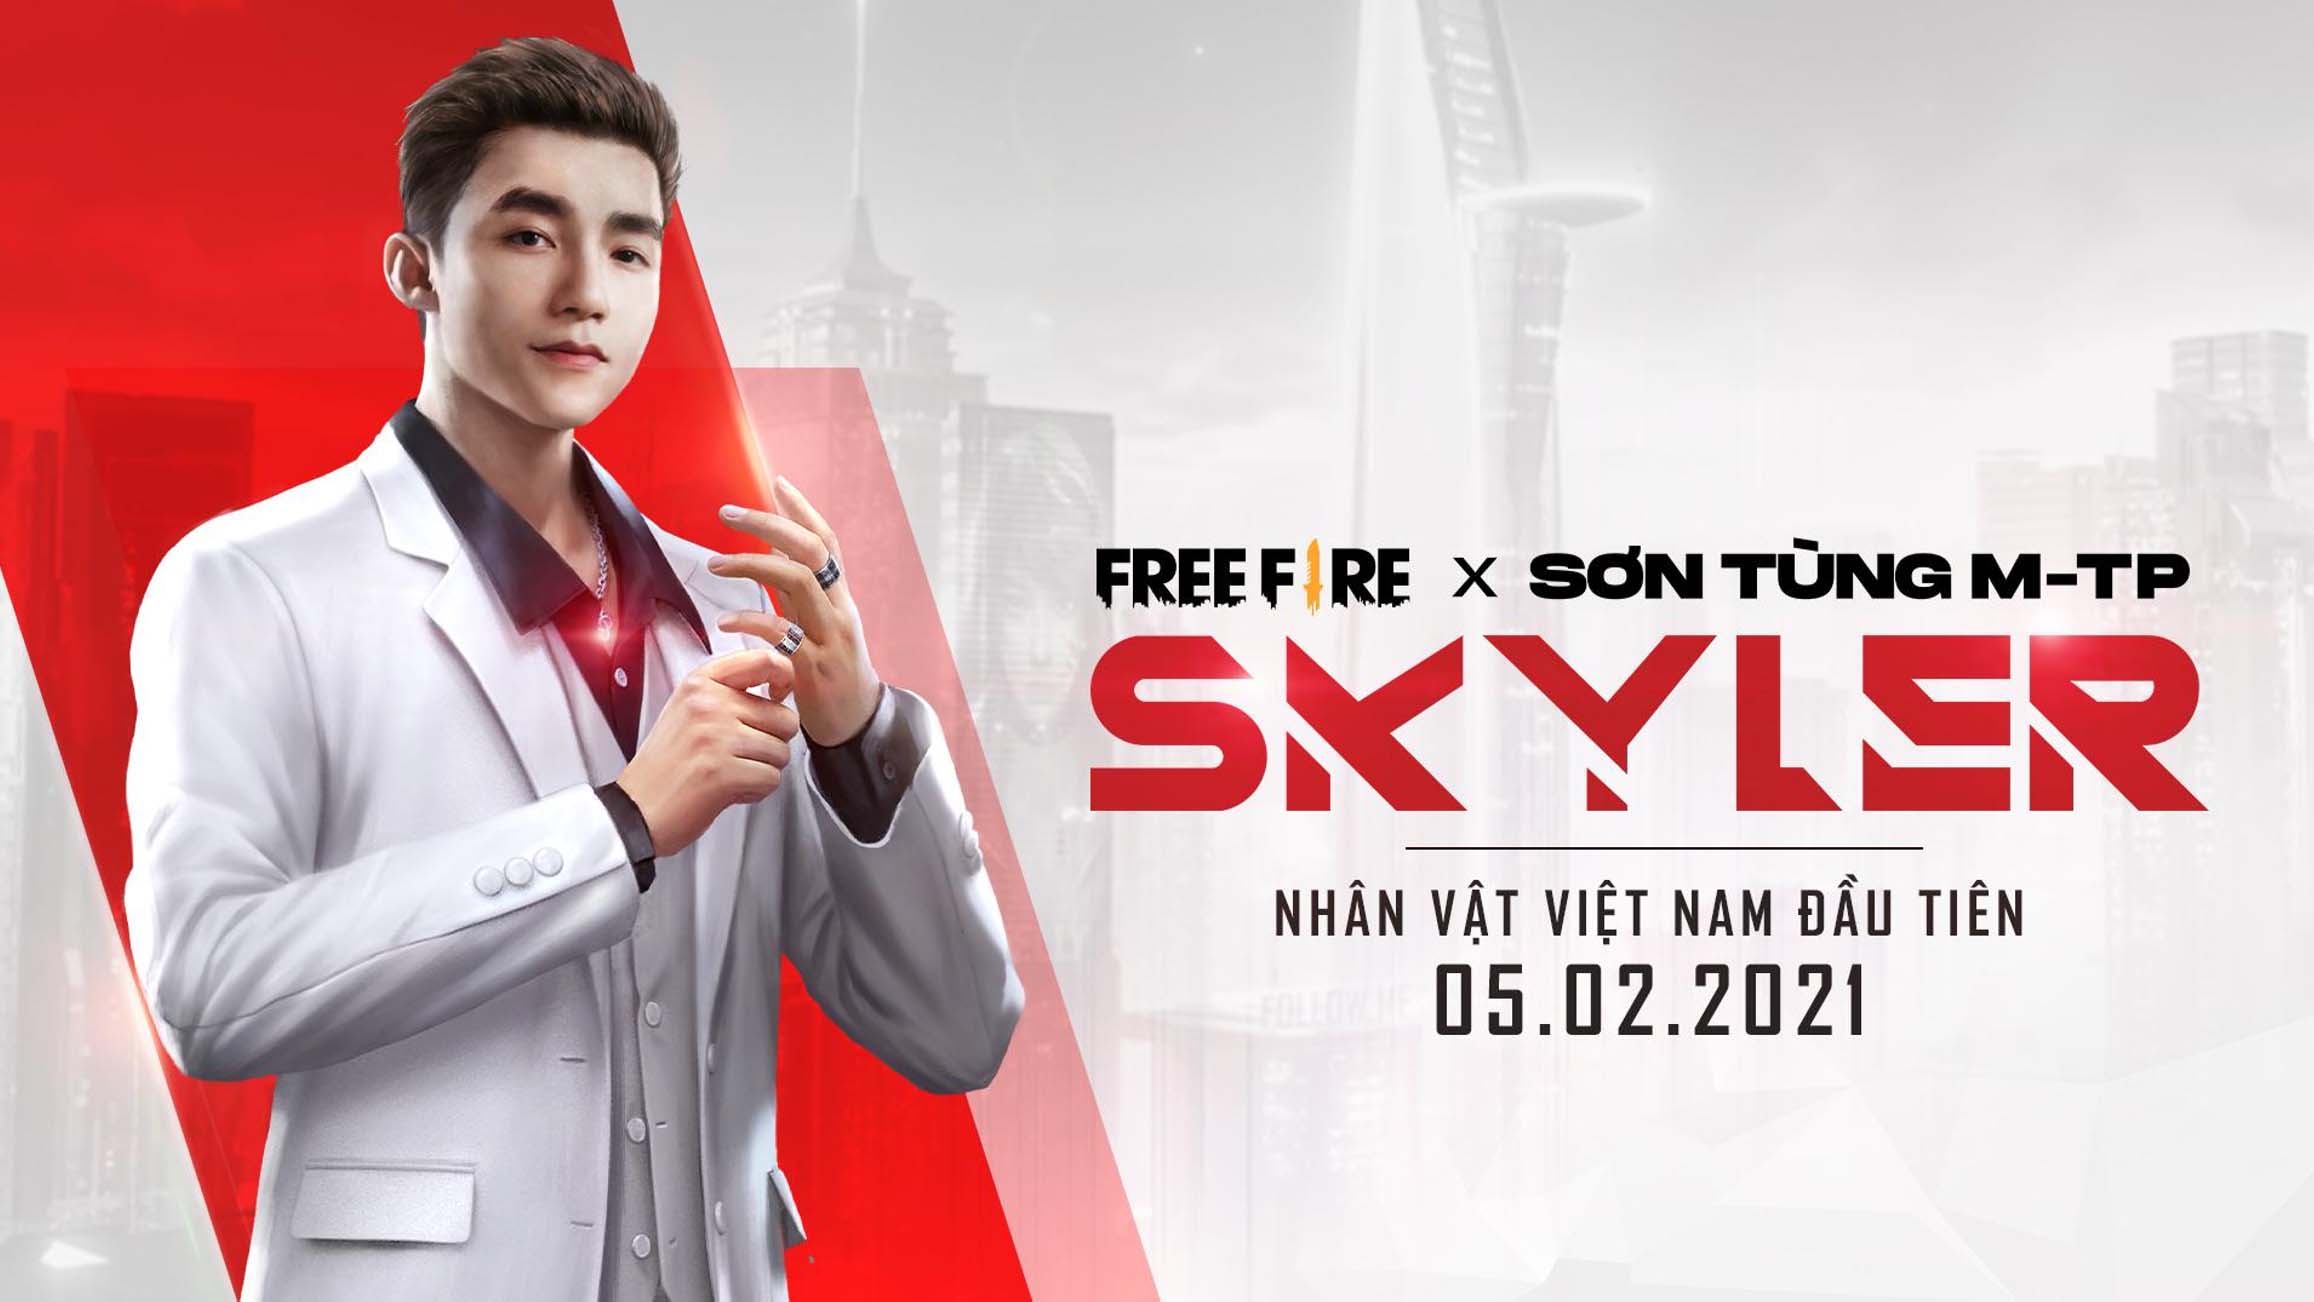 Tìm hiểu về Skyler - Nhân vật Việt Nam đầu tiên lấy cảm hứng từ Sơn Tùng M-TP, xuất hiện trong Free Fire từ ngày 05/02/2021